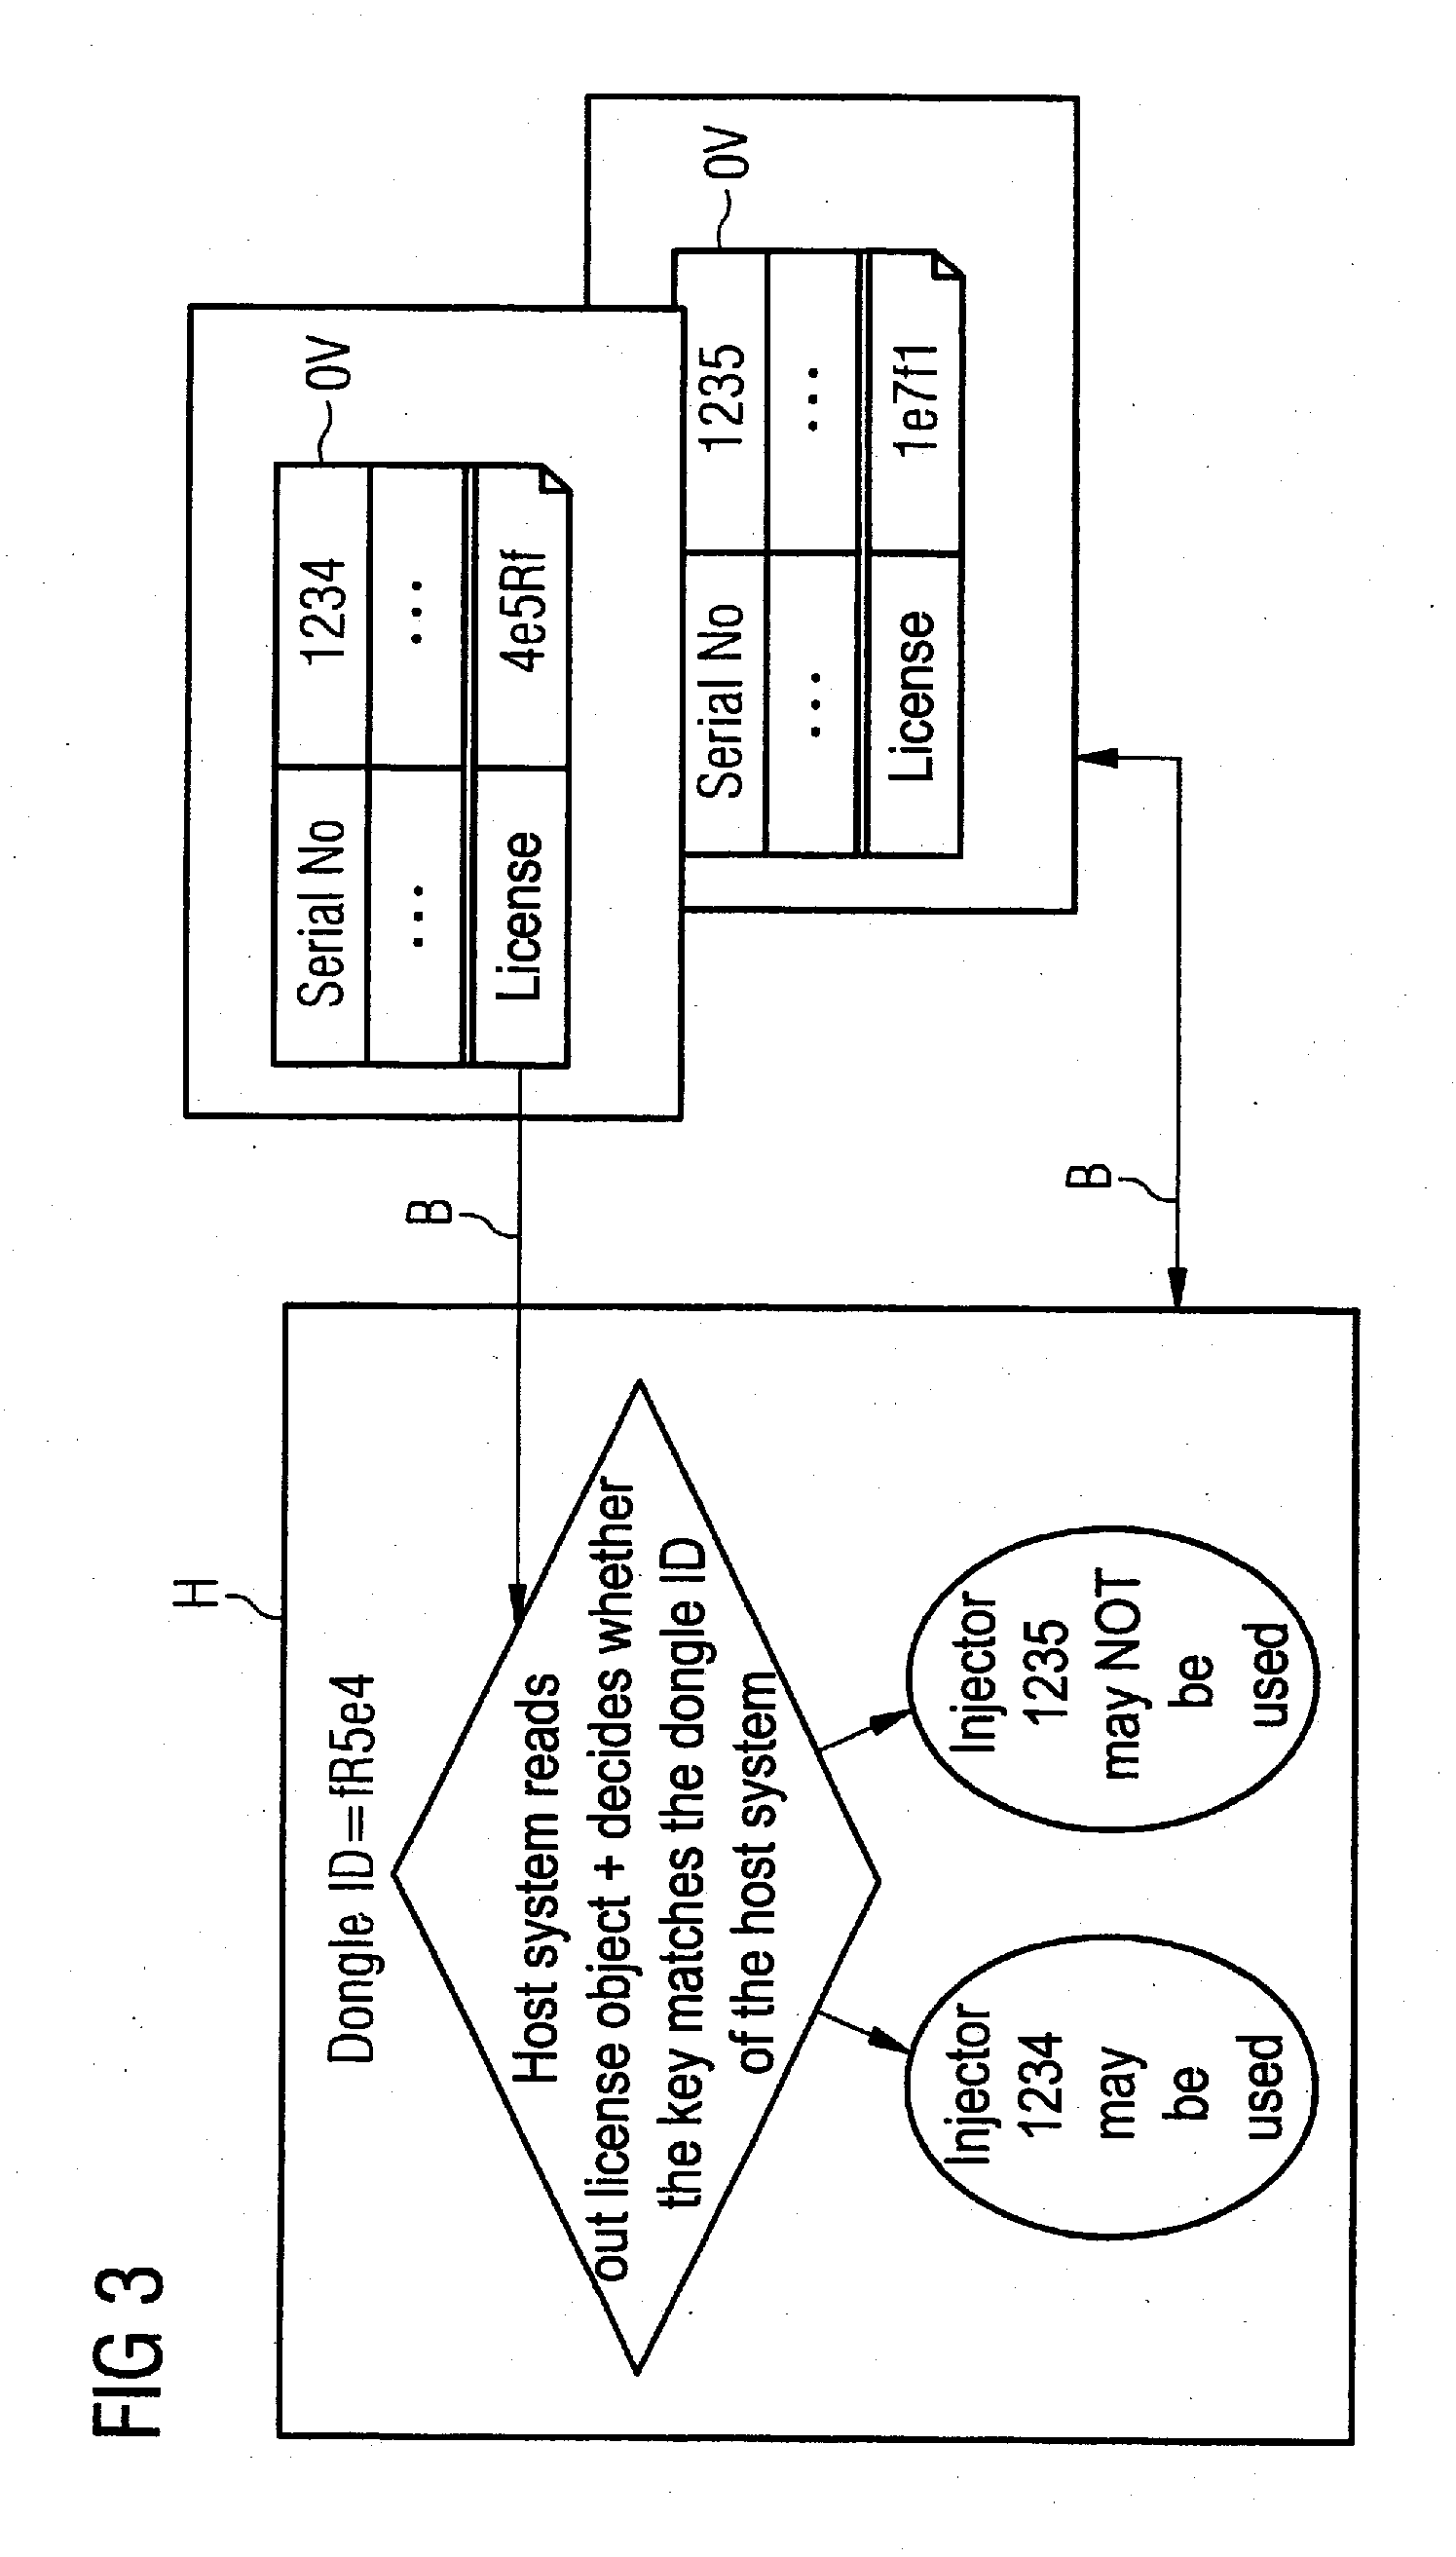 Control of a peripheral apparatus via a canopen interface